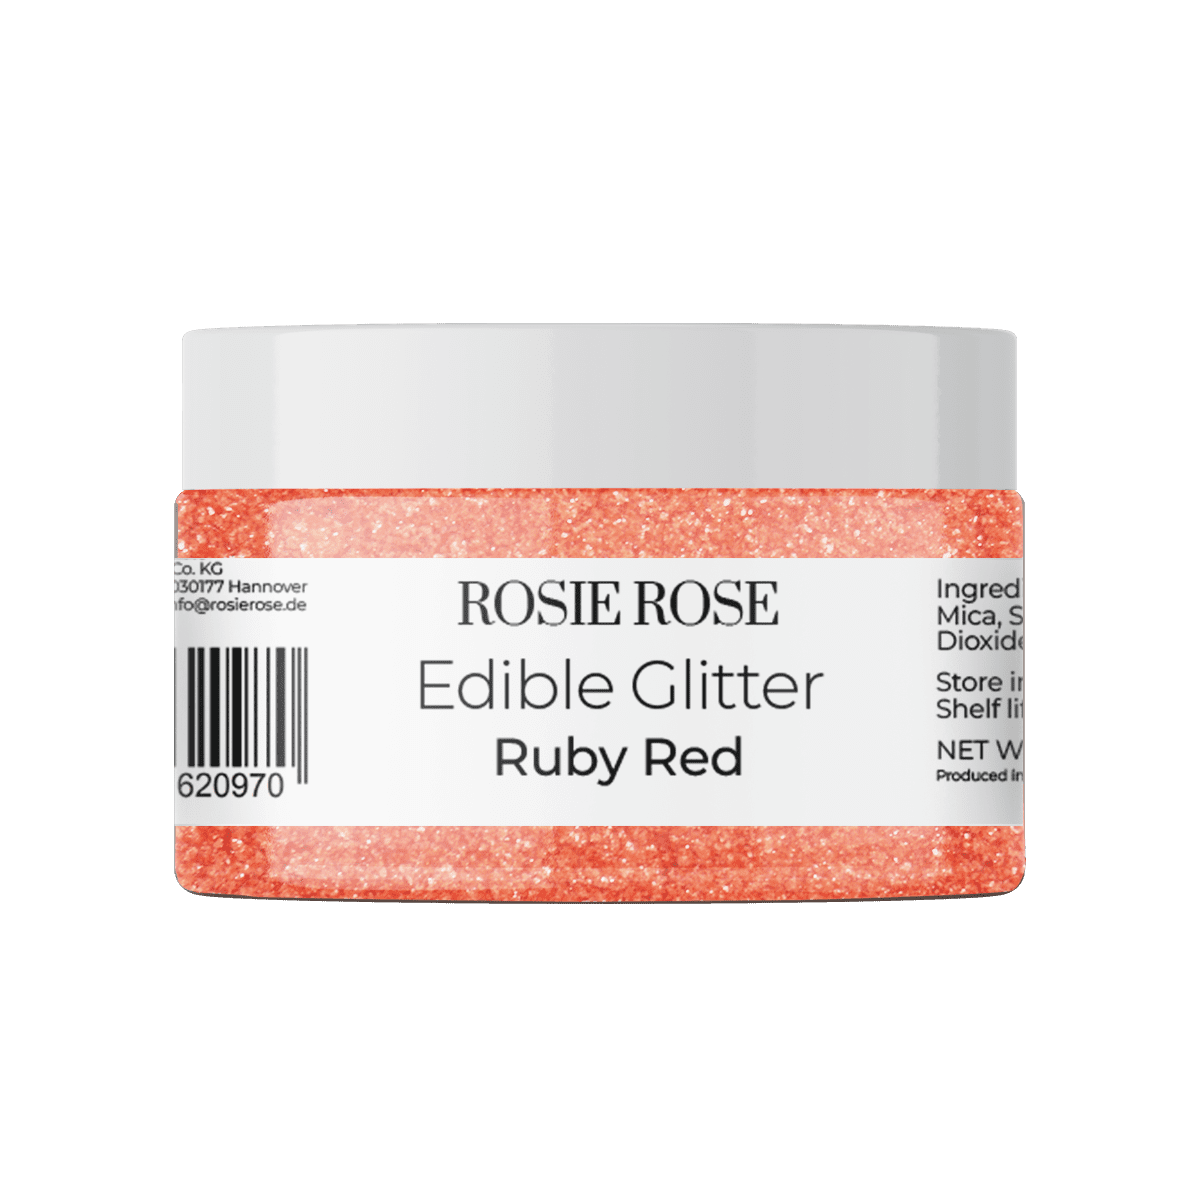 Unser essbares Glitter in Ruby Red ohne E171 bringt Ihre Backwerke zum Strahlen in der Farbe Rot. Verleihen Sie Ihren Desserts einen roten Glanz und beeindrucken Sie Ihre Gäste. Entdecken Sie bei ROSIE ROSE eine vielfältige Auswahl an essbaren Blumen und Toppings für Ihre Tortendekorationen.